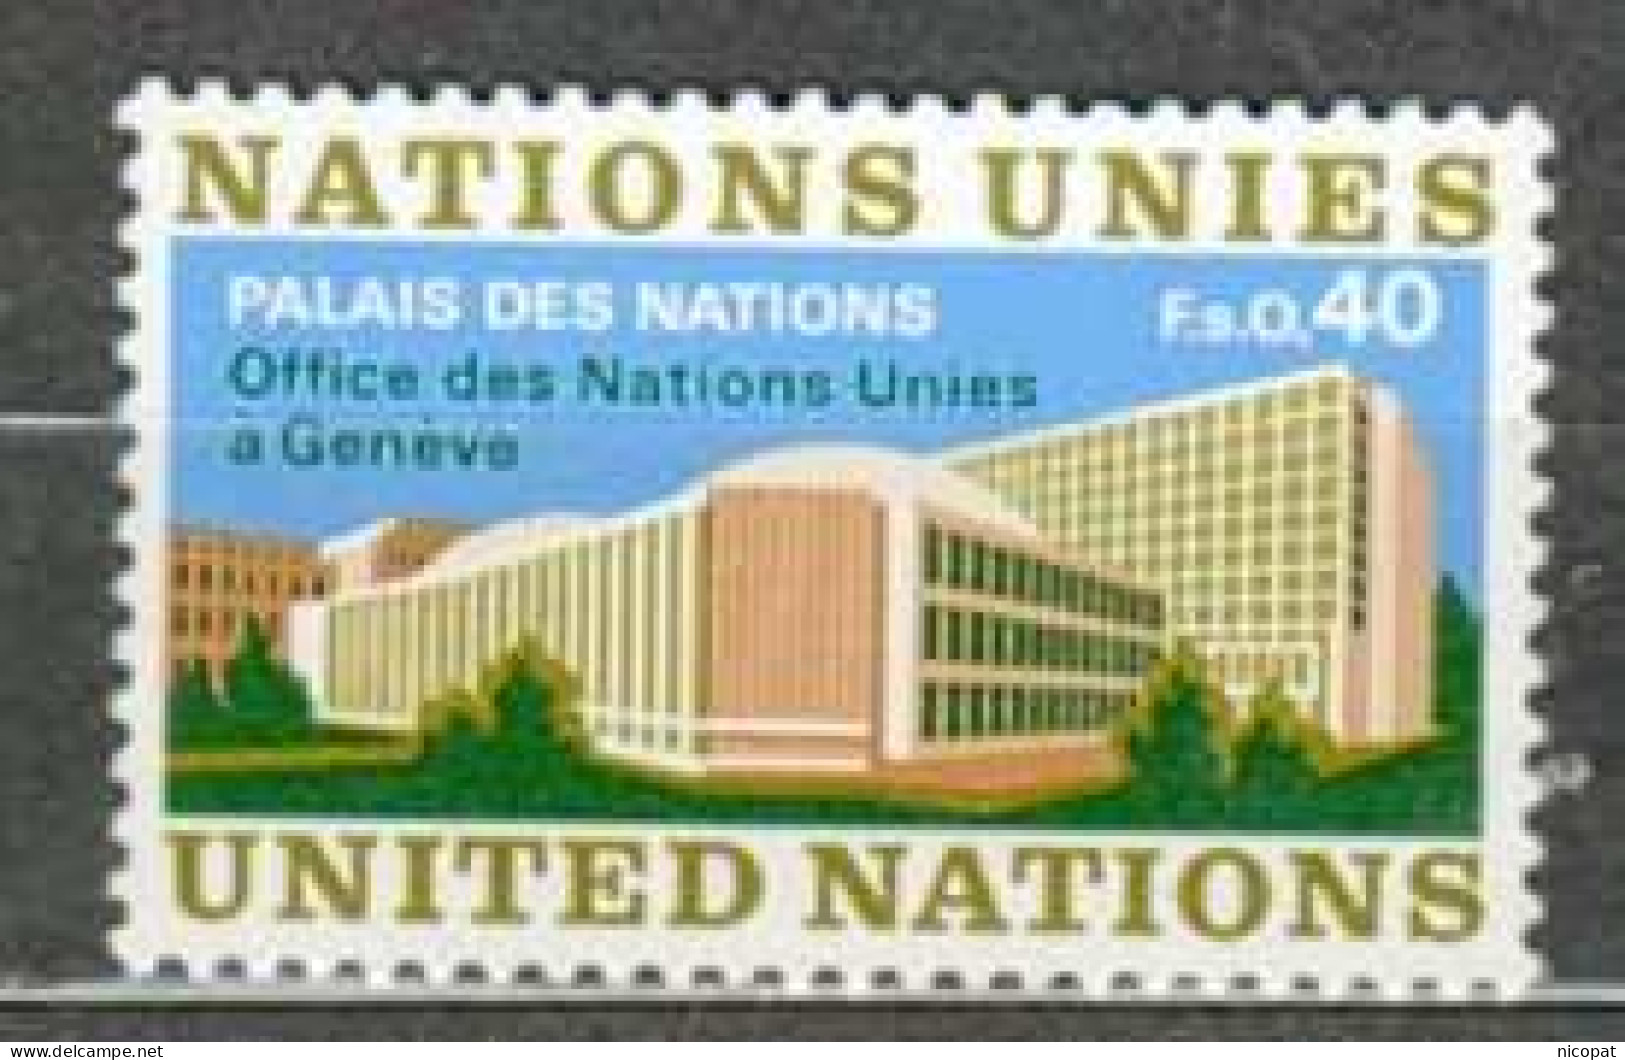 ONU GENEVE MNH ** 22 Palais Des Nations à Genève Suisse - Neufs